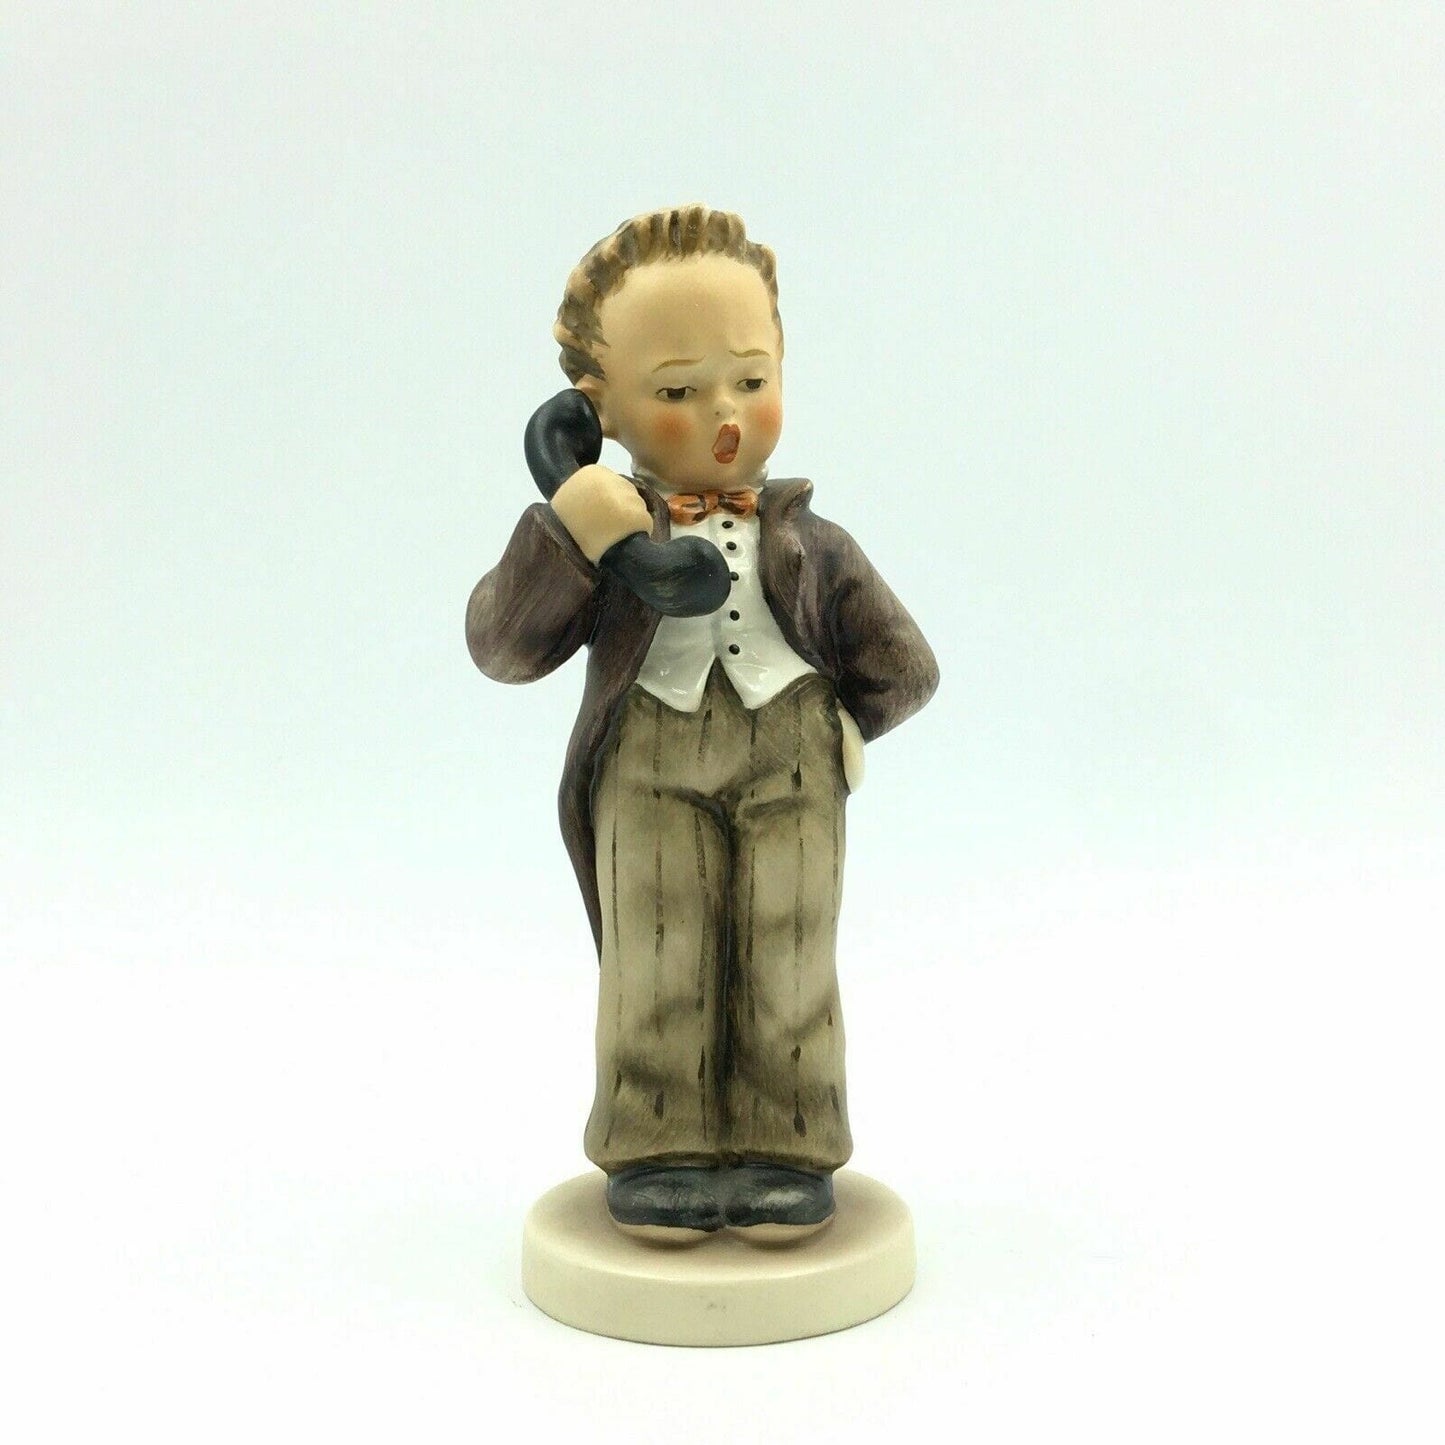 Goebel HUMMEL 6" Figurine "Hello" Boy On Telephone